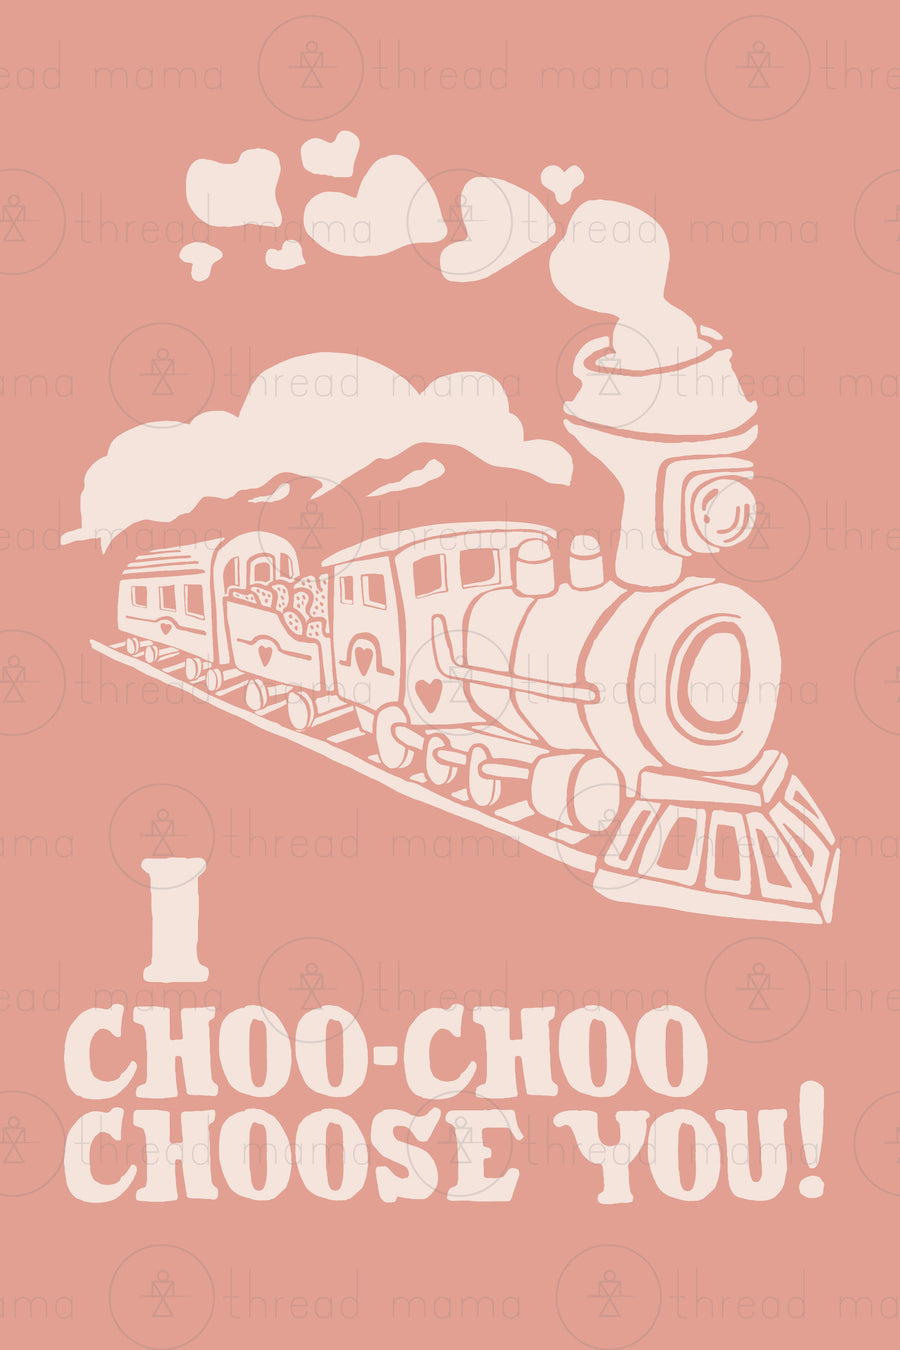 I Choo-Choo Choose You!